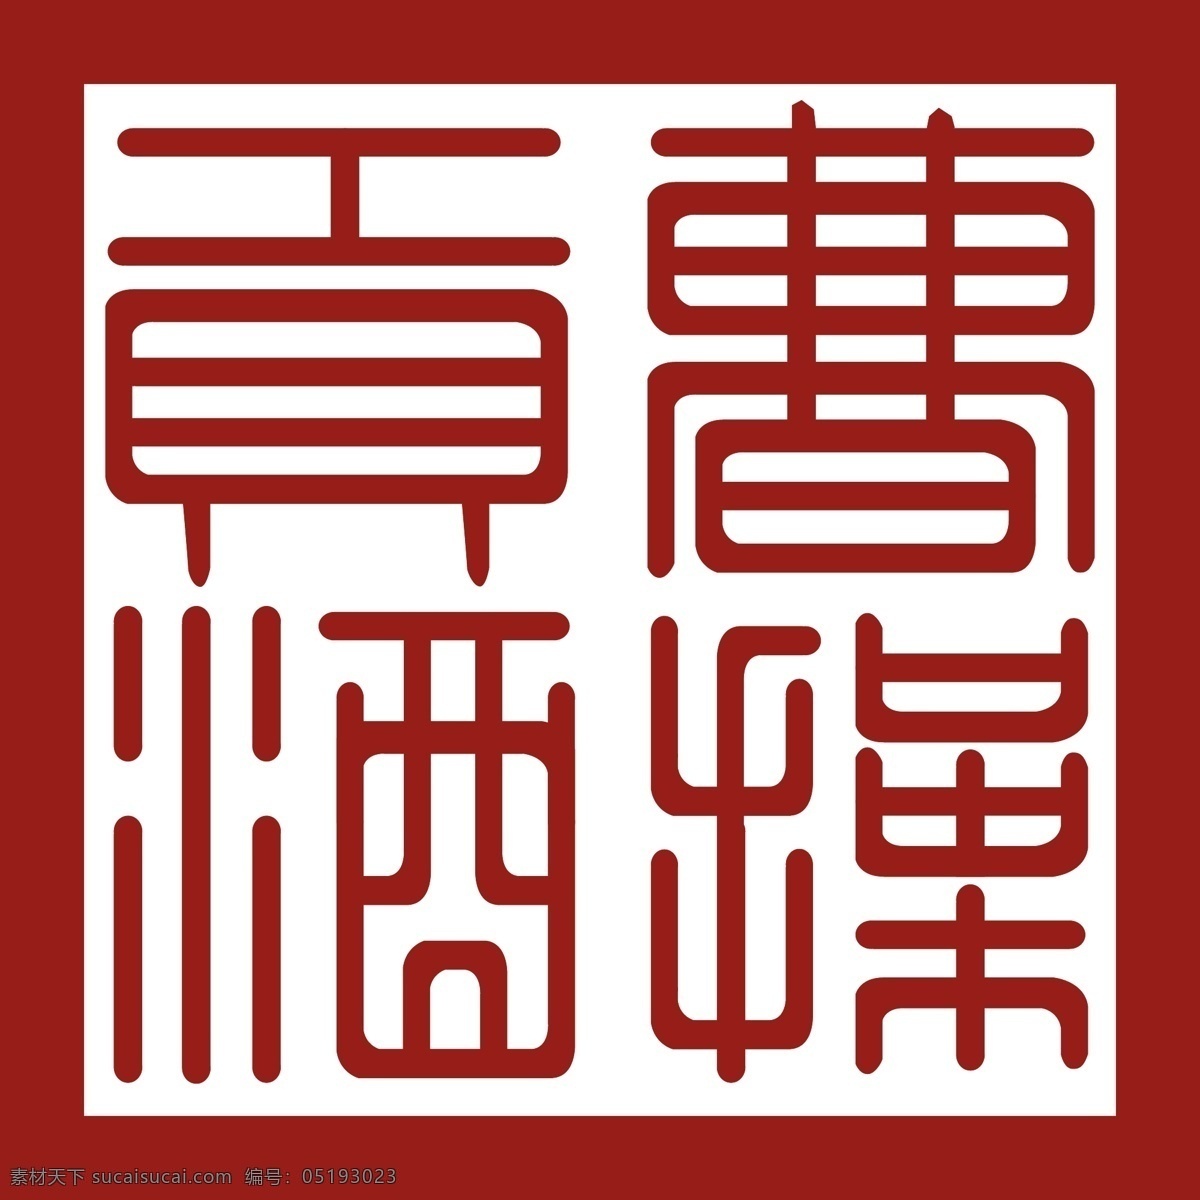 曹 操 贡酒 logo logo设计 电商设计 矢量logo 矢量素材下载 曹操 矢量图